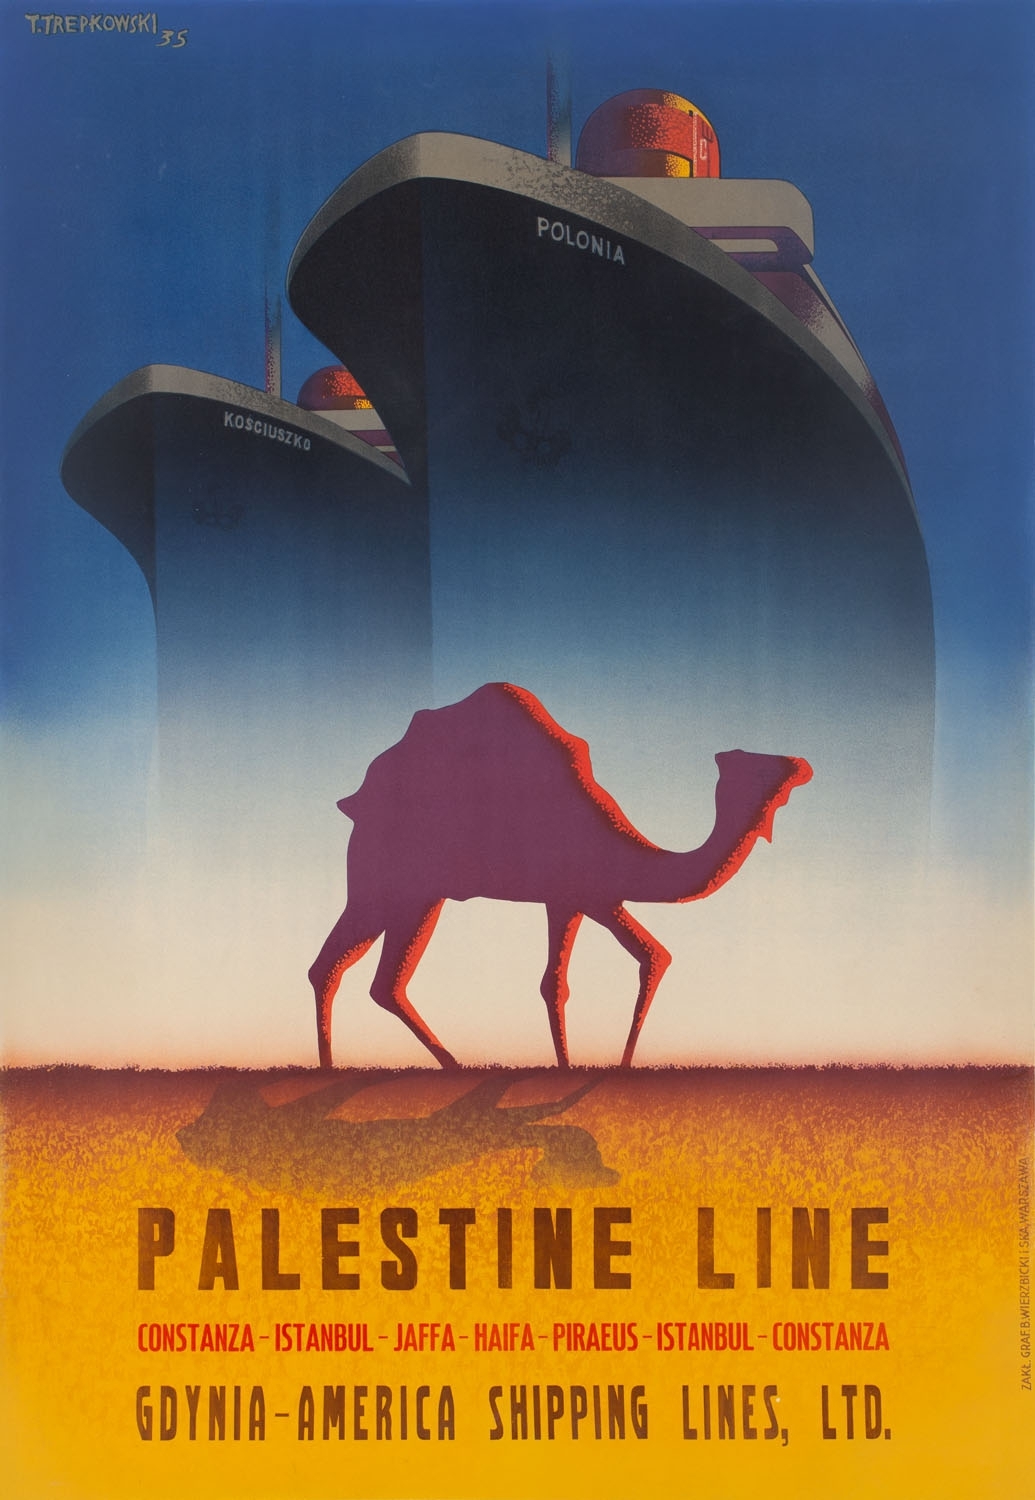 PALESTINE LINE' by Tadeusz Trepkowski, 1935